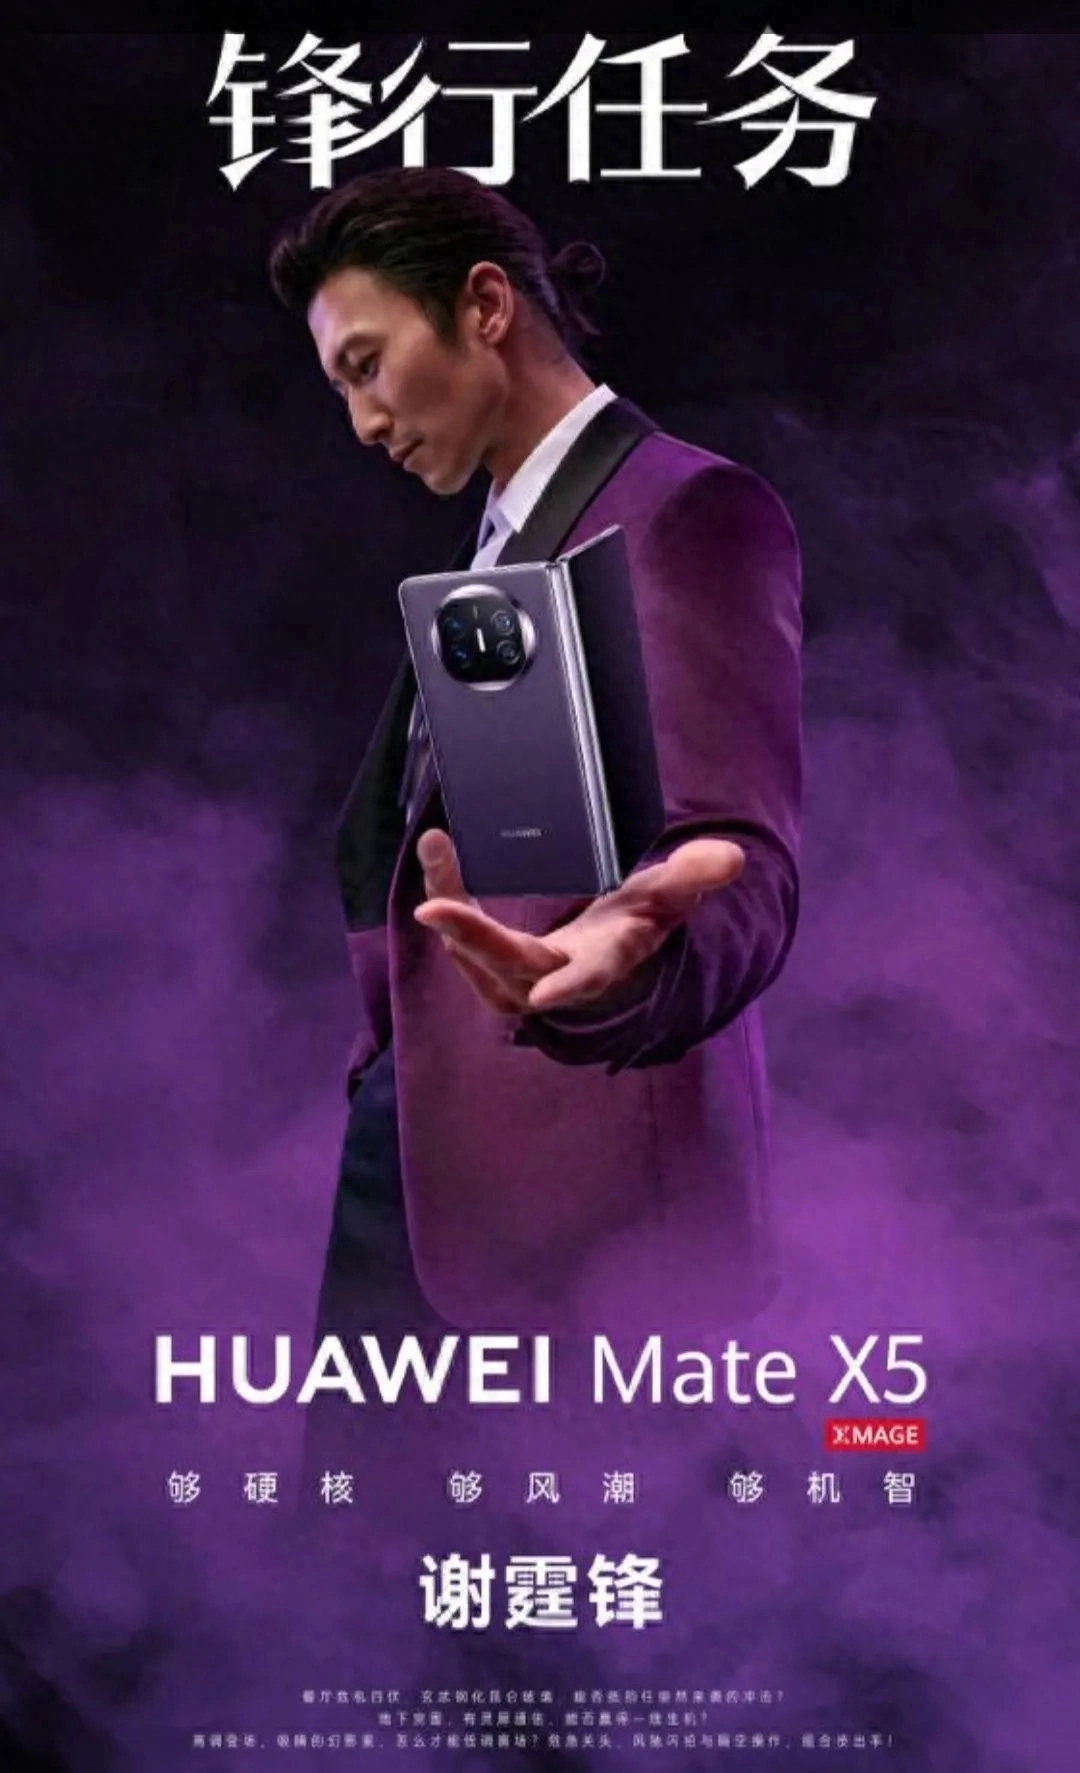  华为Mate X5备受瞩目，谢霆锋代言，引领折叠屏手机市场潮流！